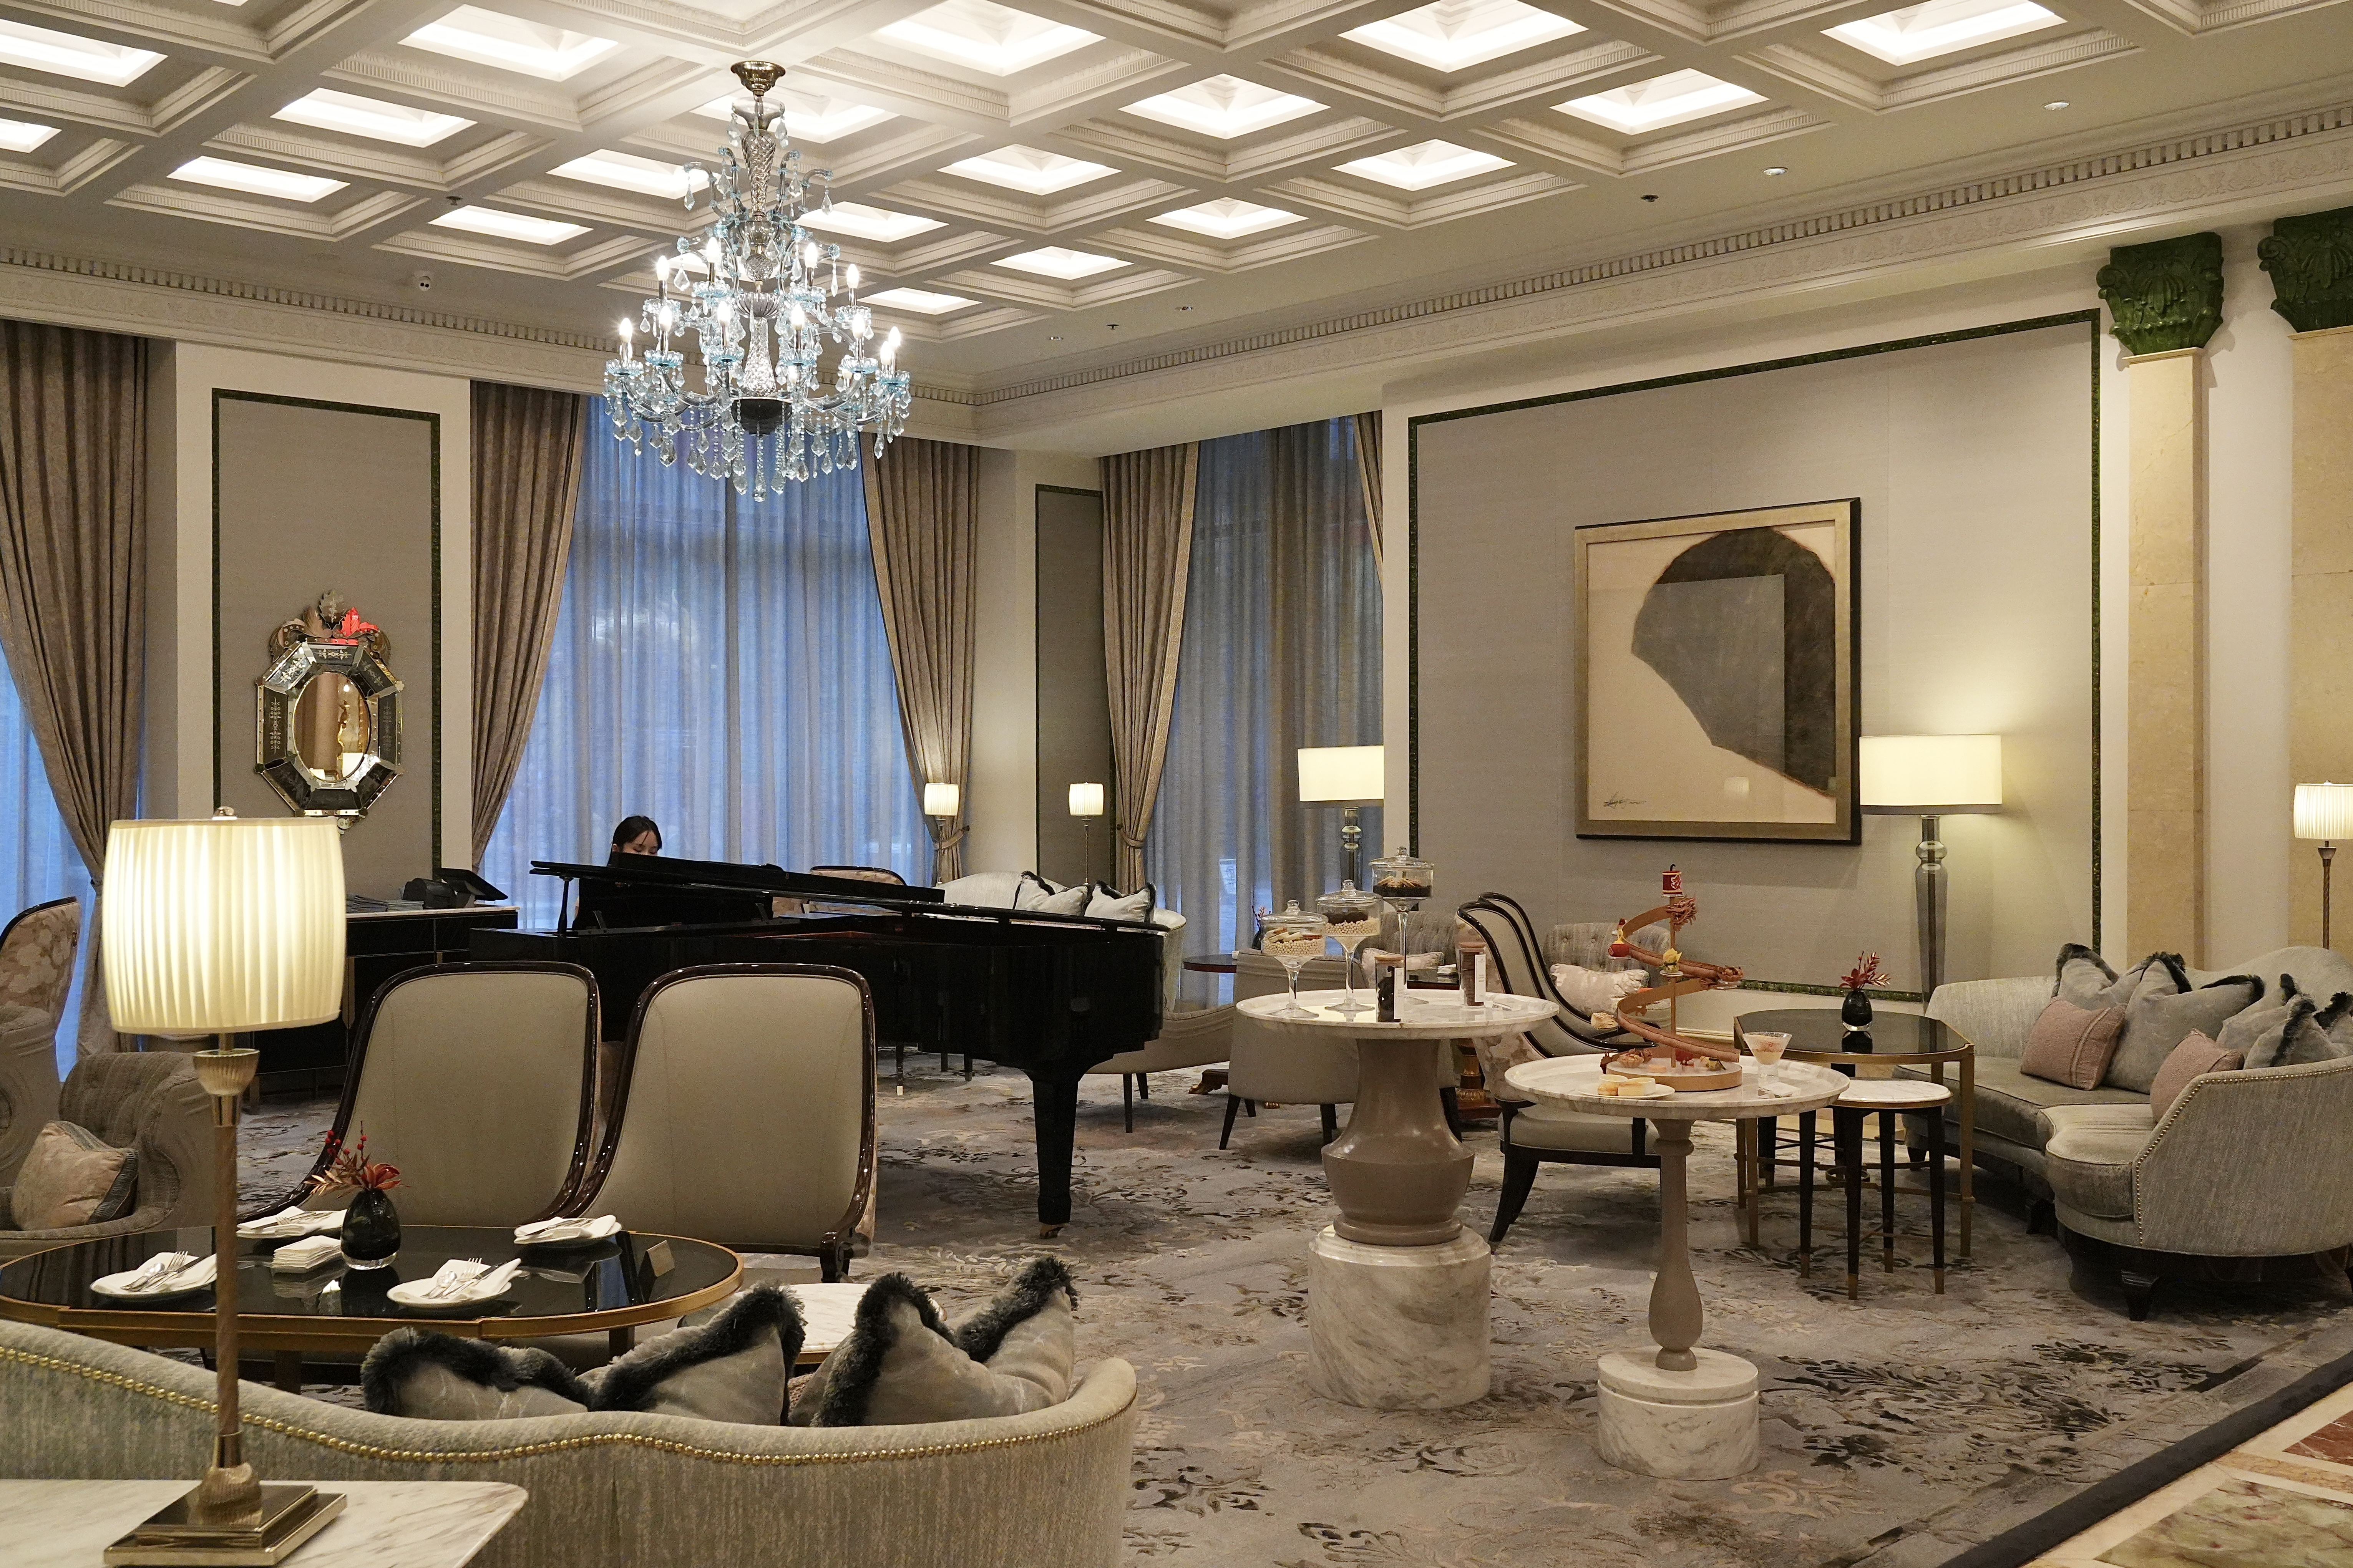 ʳڹݣݸ˼ The Ritz-Carlton Guangzhou